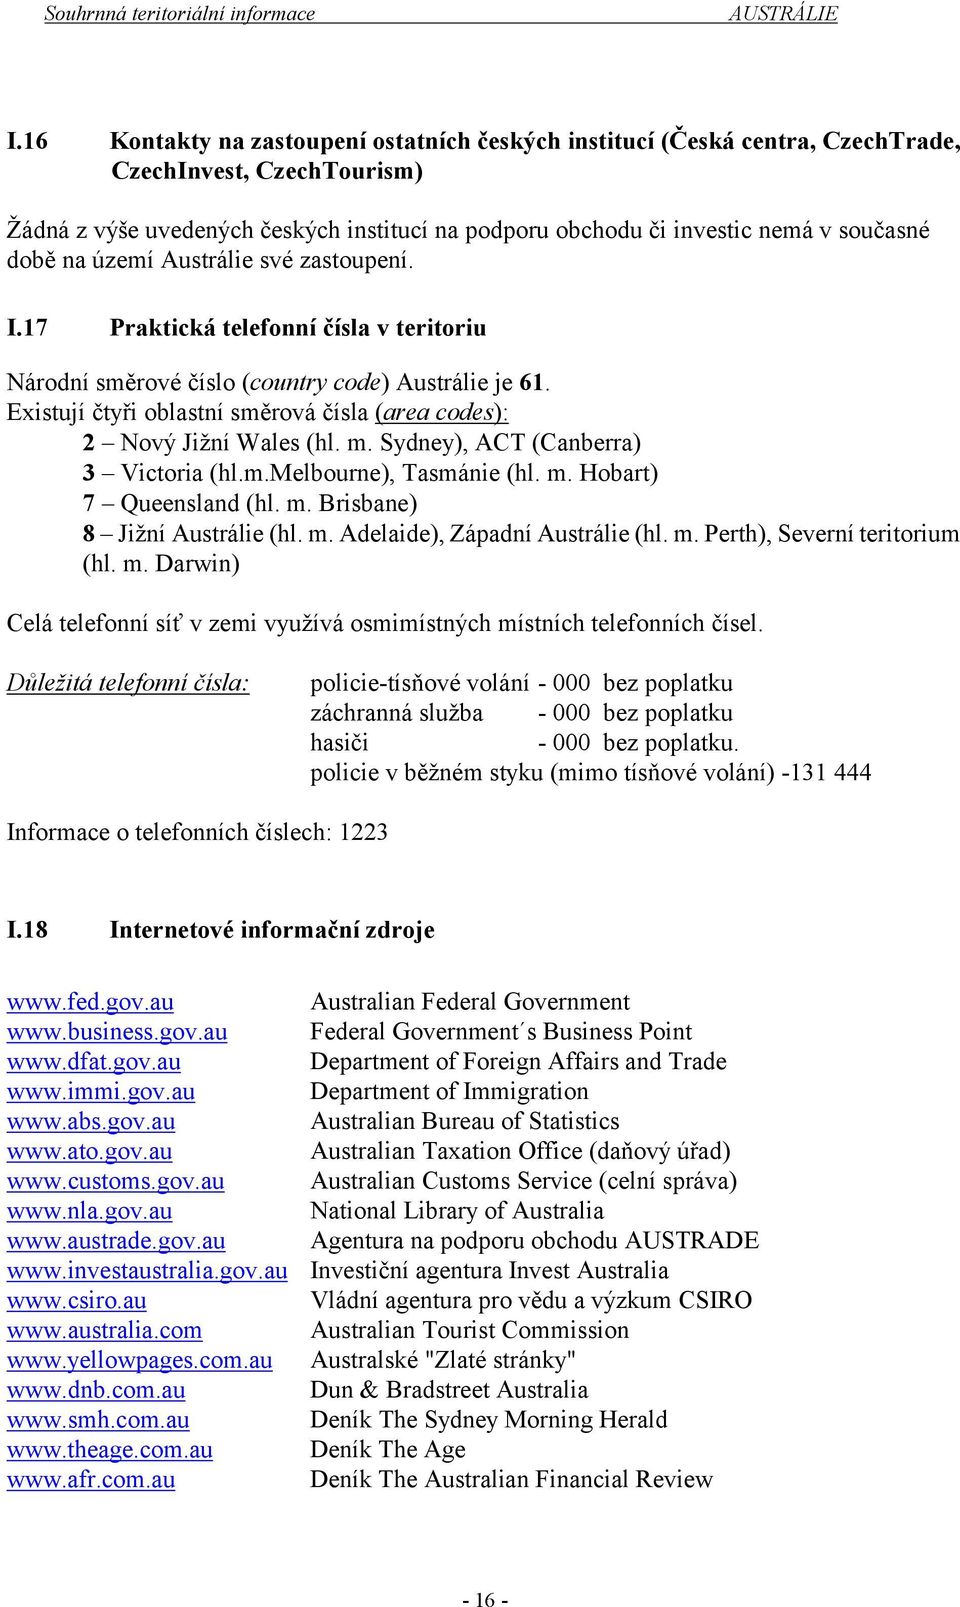 telefonní seznamky Austrálie zdarma muskegon datování